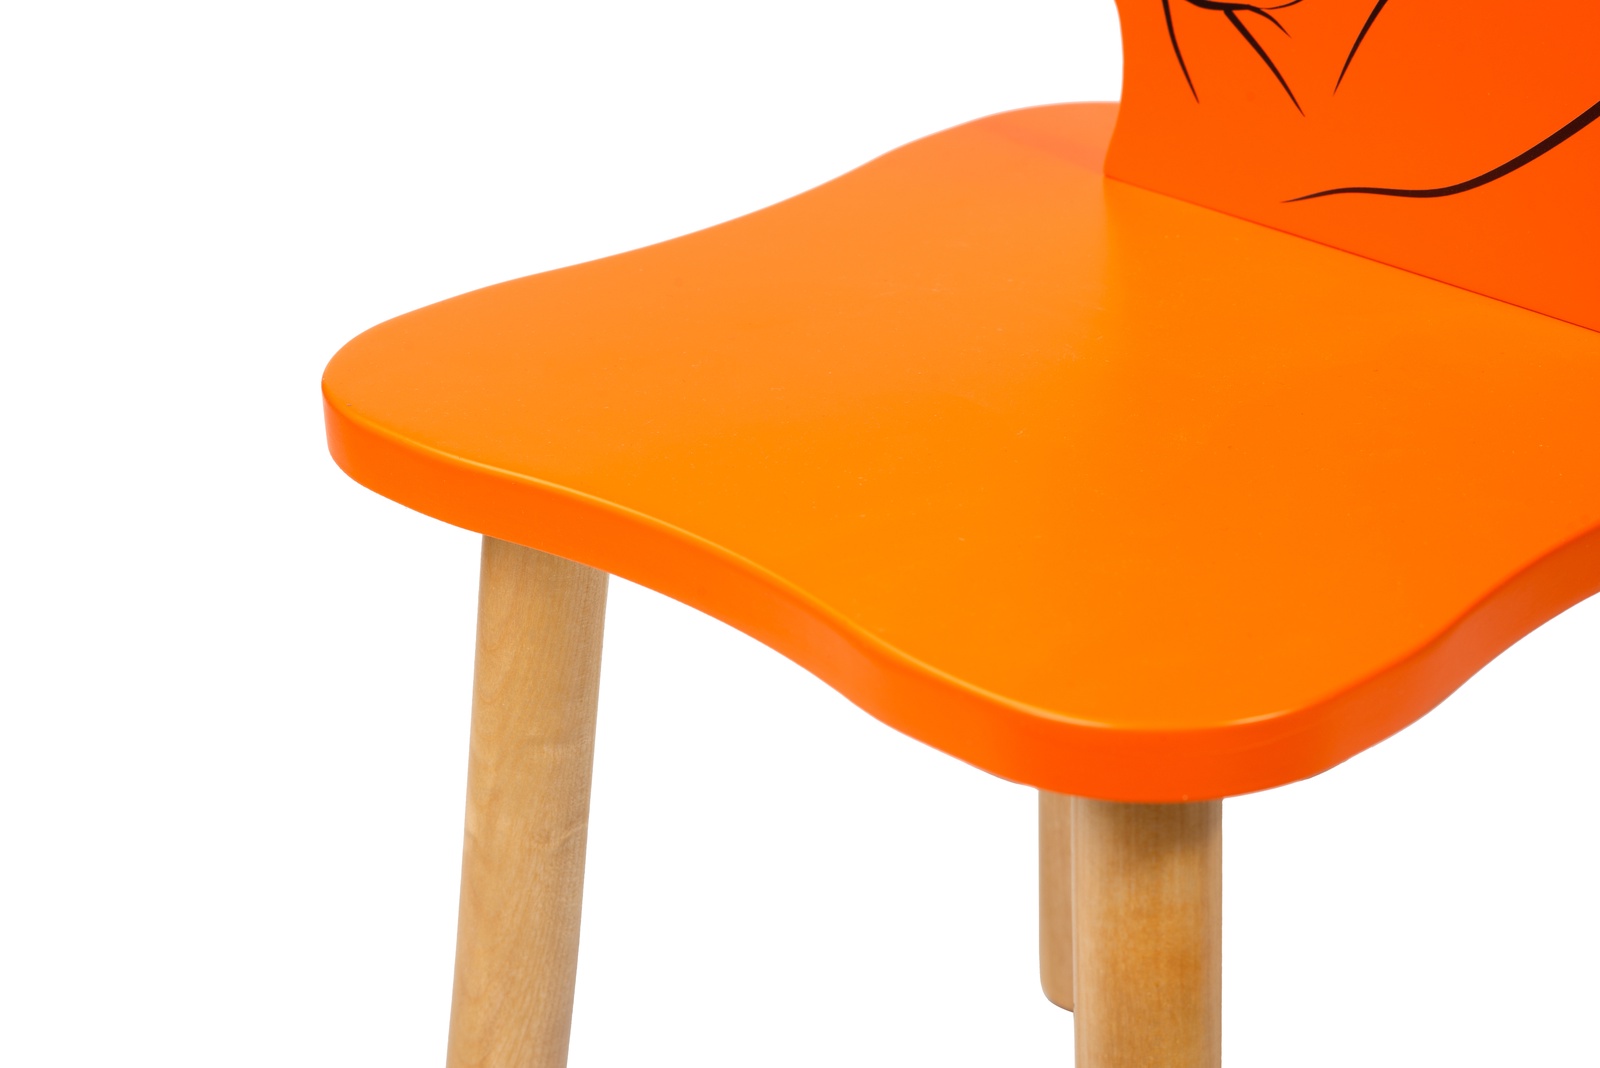 Купить оранжевый стул. Оранжевый стул. Табурет оранжевый. Оранжевый стул у ребенка. Табуретки оранжевого цвета.